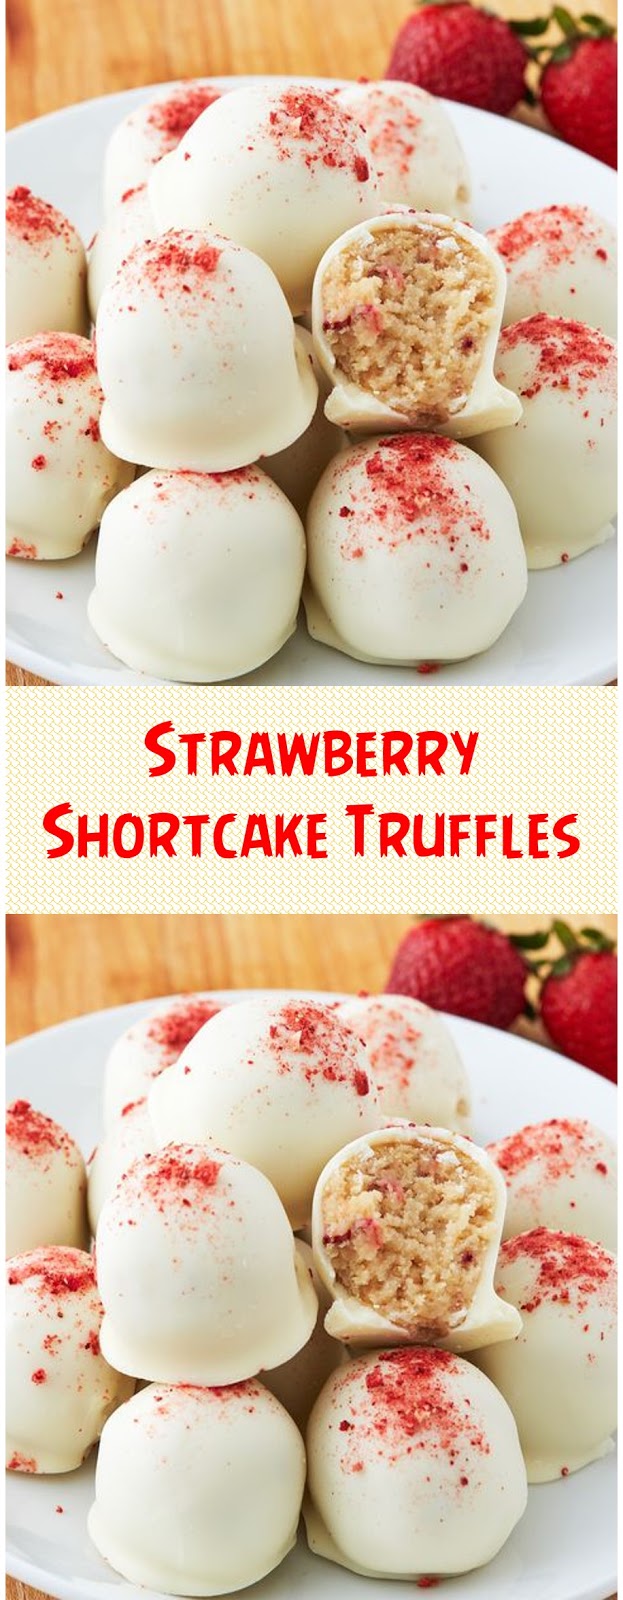 Strawberry Shortcake Truffles